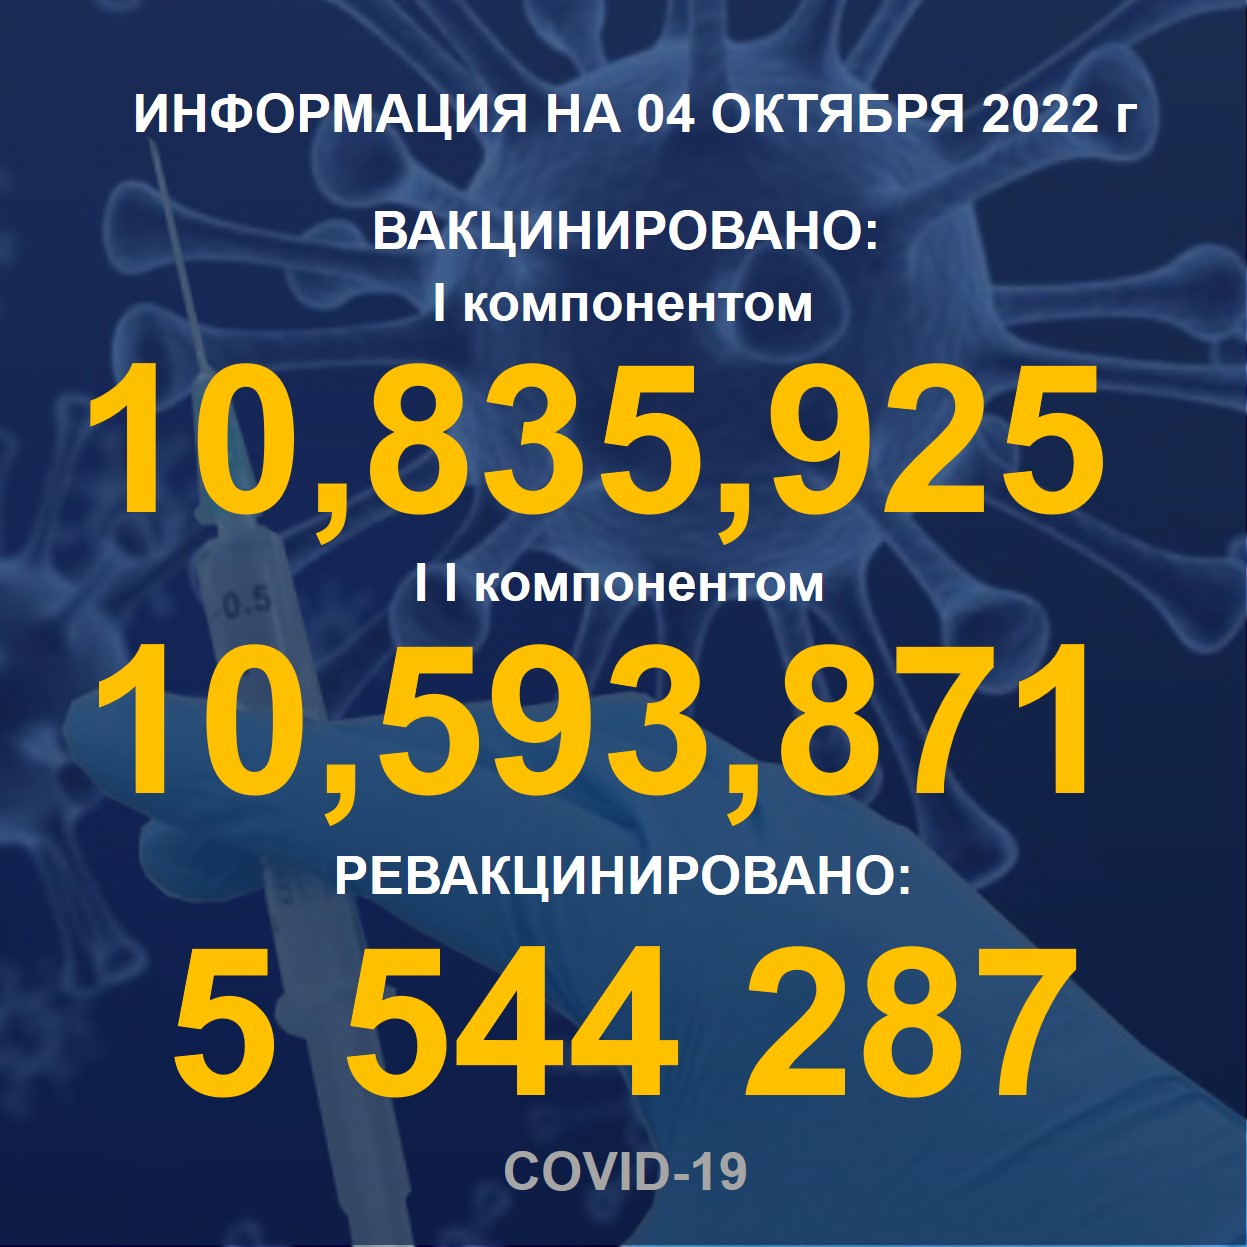 I компонентом 10 835 925 человек провакцинировано в Казахстане на 04.10.2022 г, II компонентом 10 593 871 человек. Ревакцинировано – 5 544 287